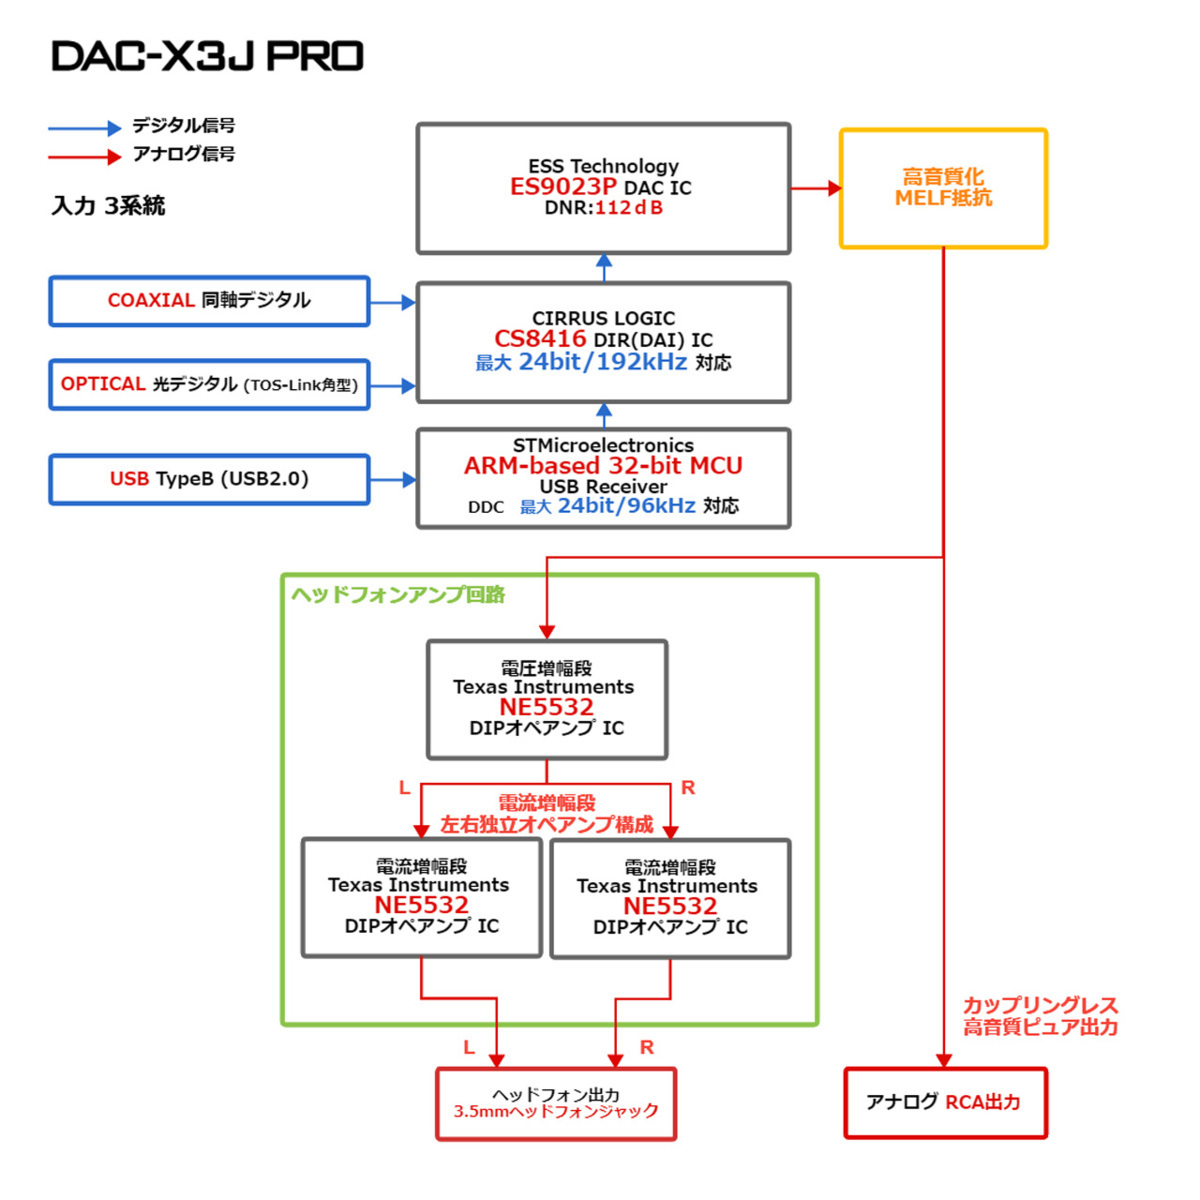 FX-AUDIO- DAC-X3J PRO[シルバー]ハイレゾDAC ES9023P USBバスパワー駆動 ハイパワーヘッドフォンアンプ 光デジタル 同軸デジタル 3系統入_画像6